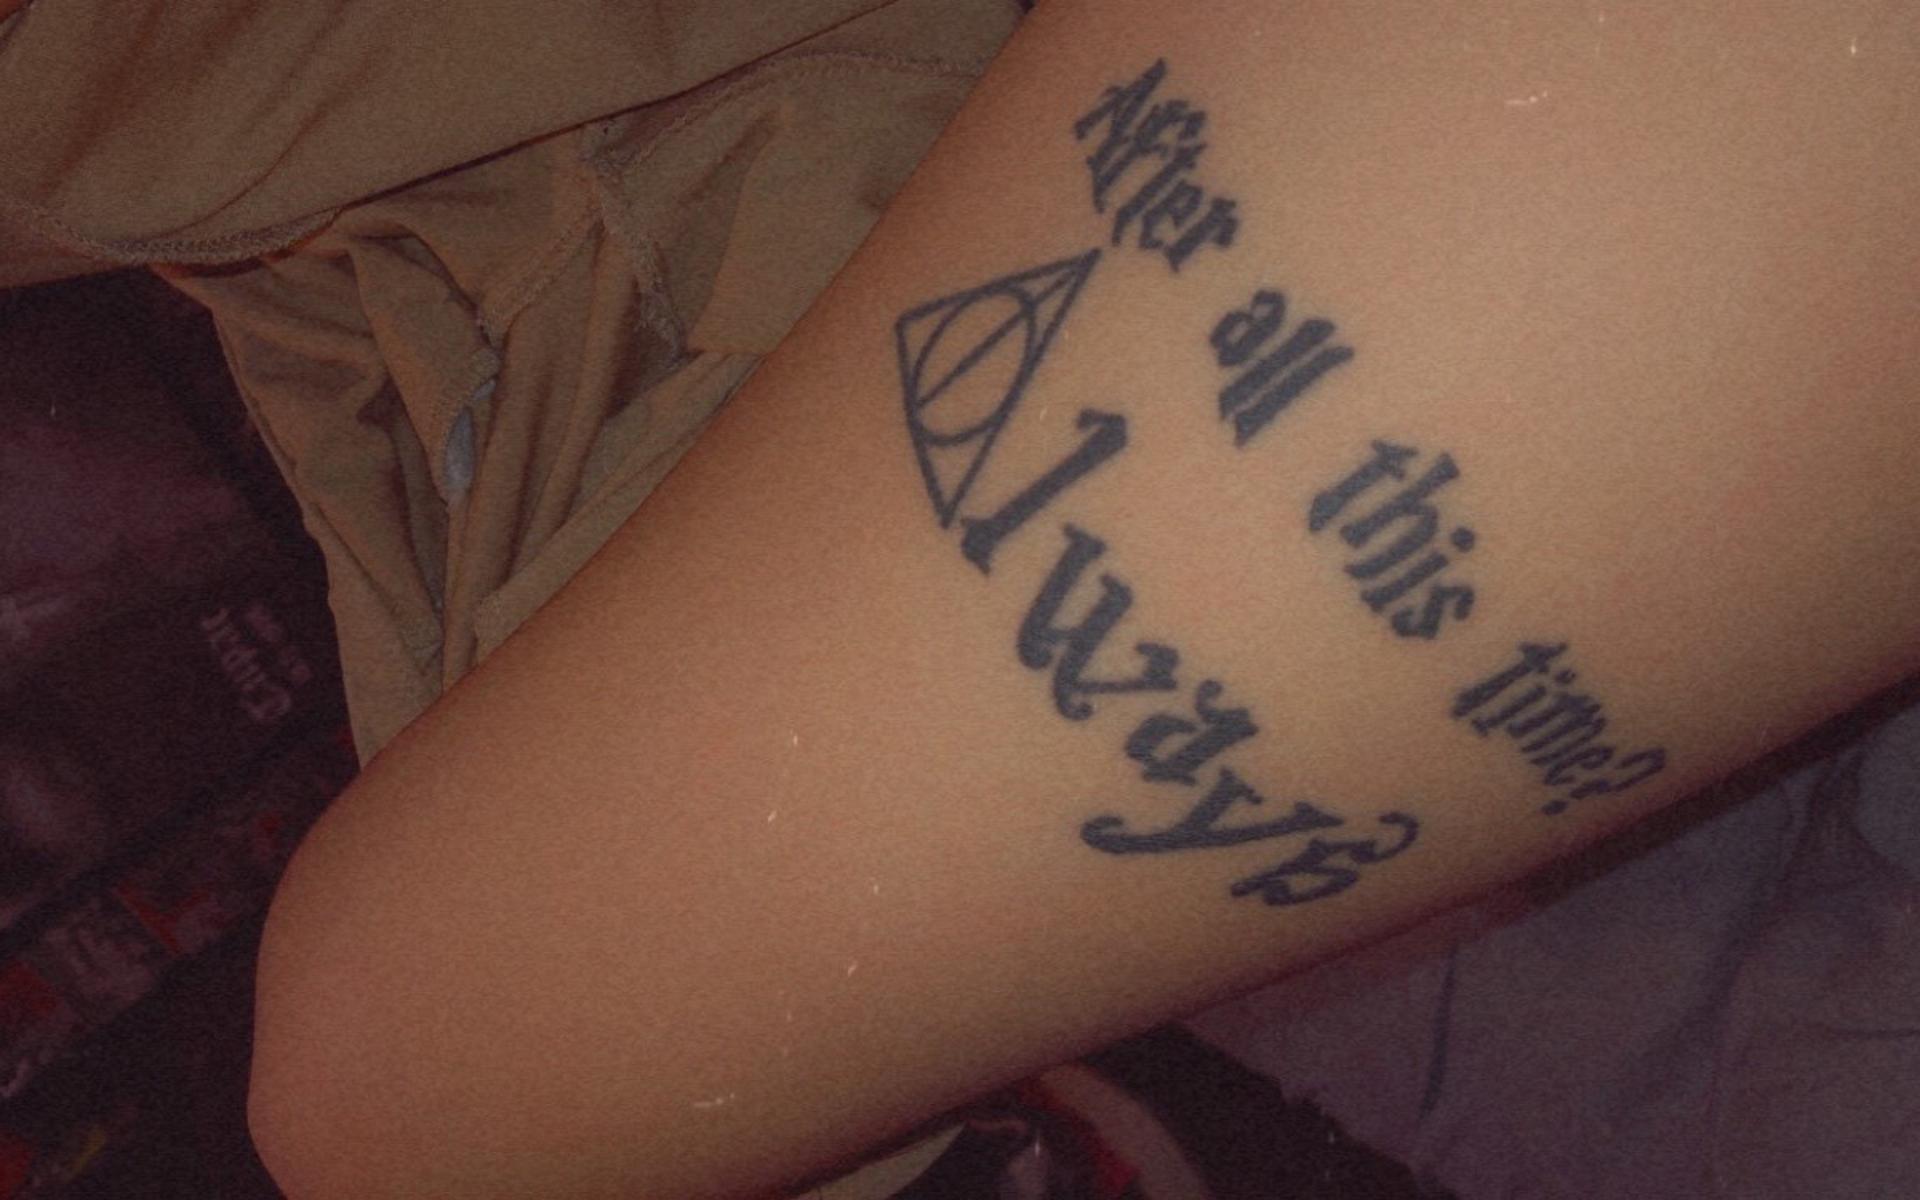 Jennifer har också tatuerat in ett av sina favoritcitat från Harry Potter-serien.